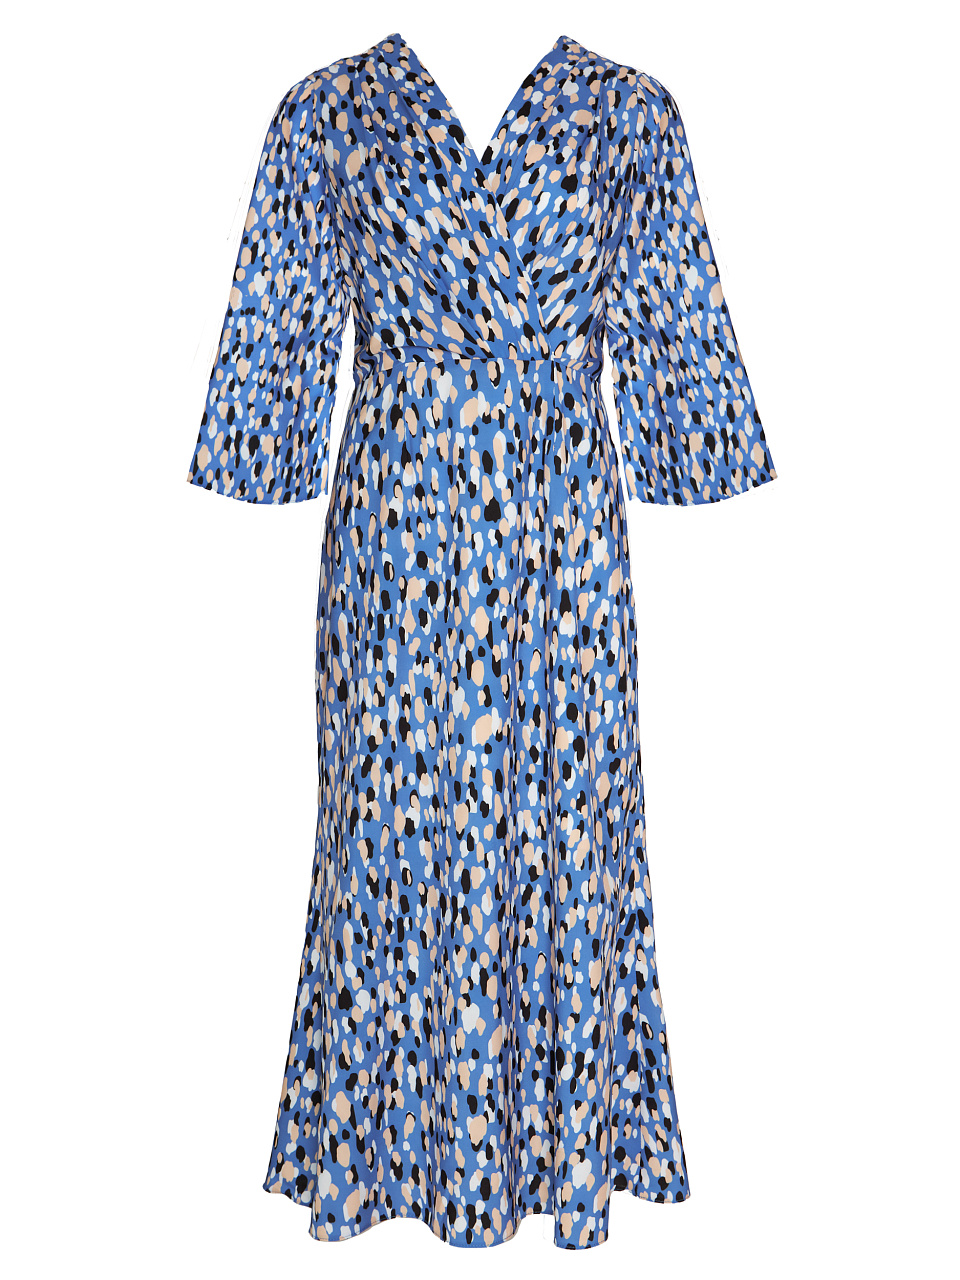 Жіноча сукня Stimma Альріда, колір - Волошково-кремовий візерунок